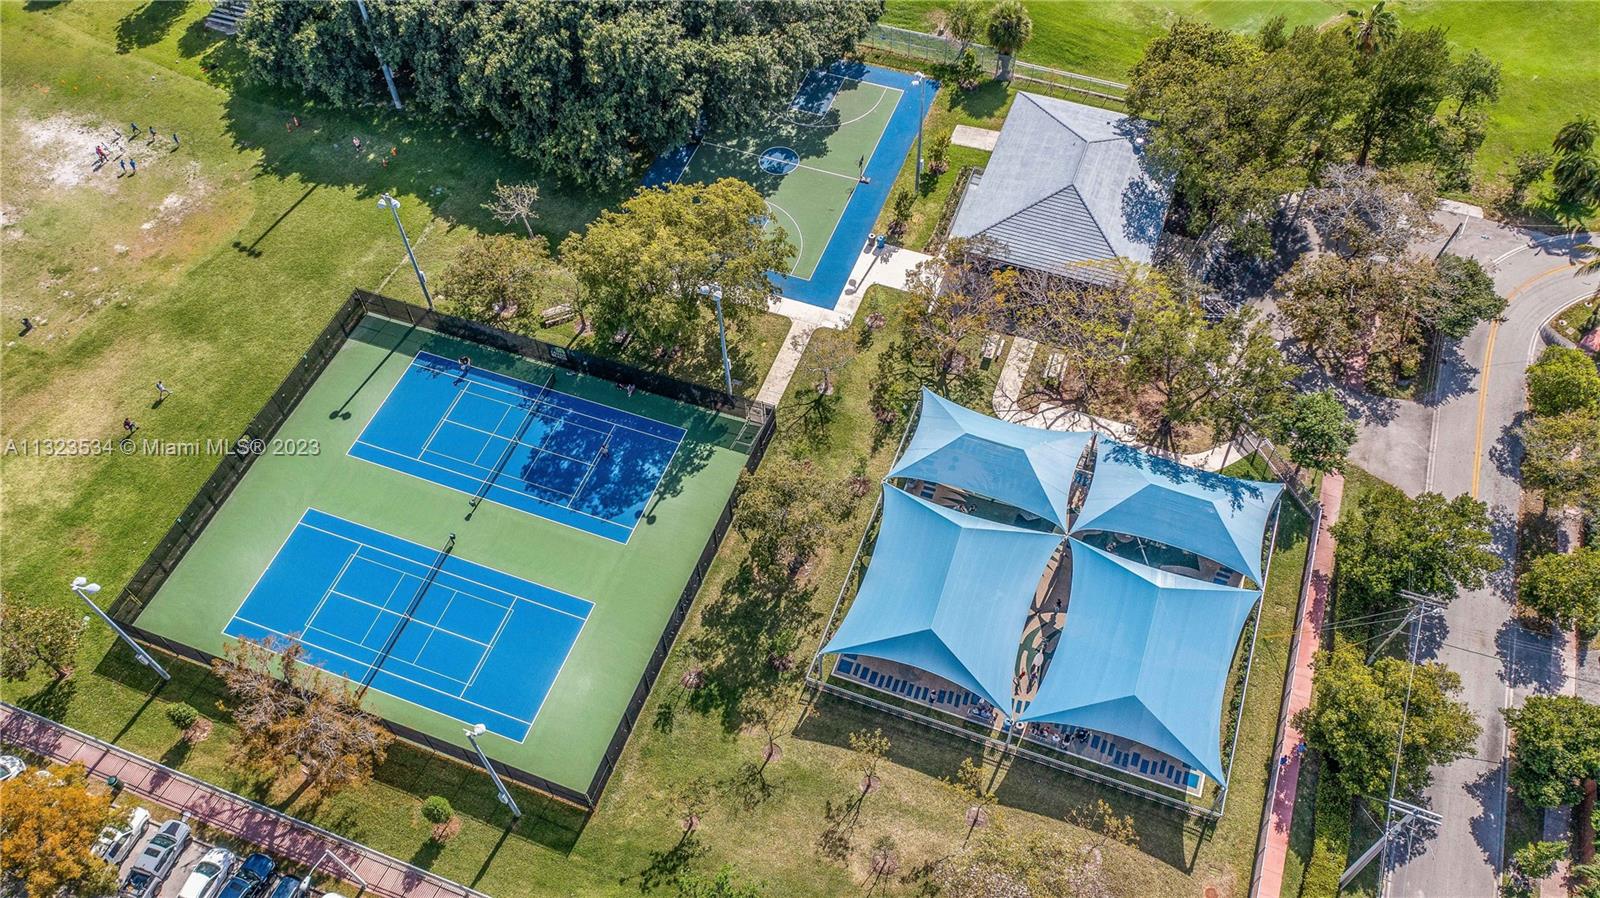 Tennis court in the development